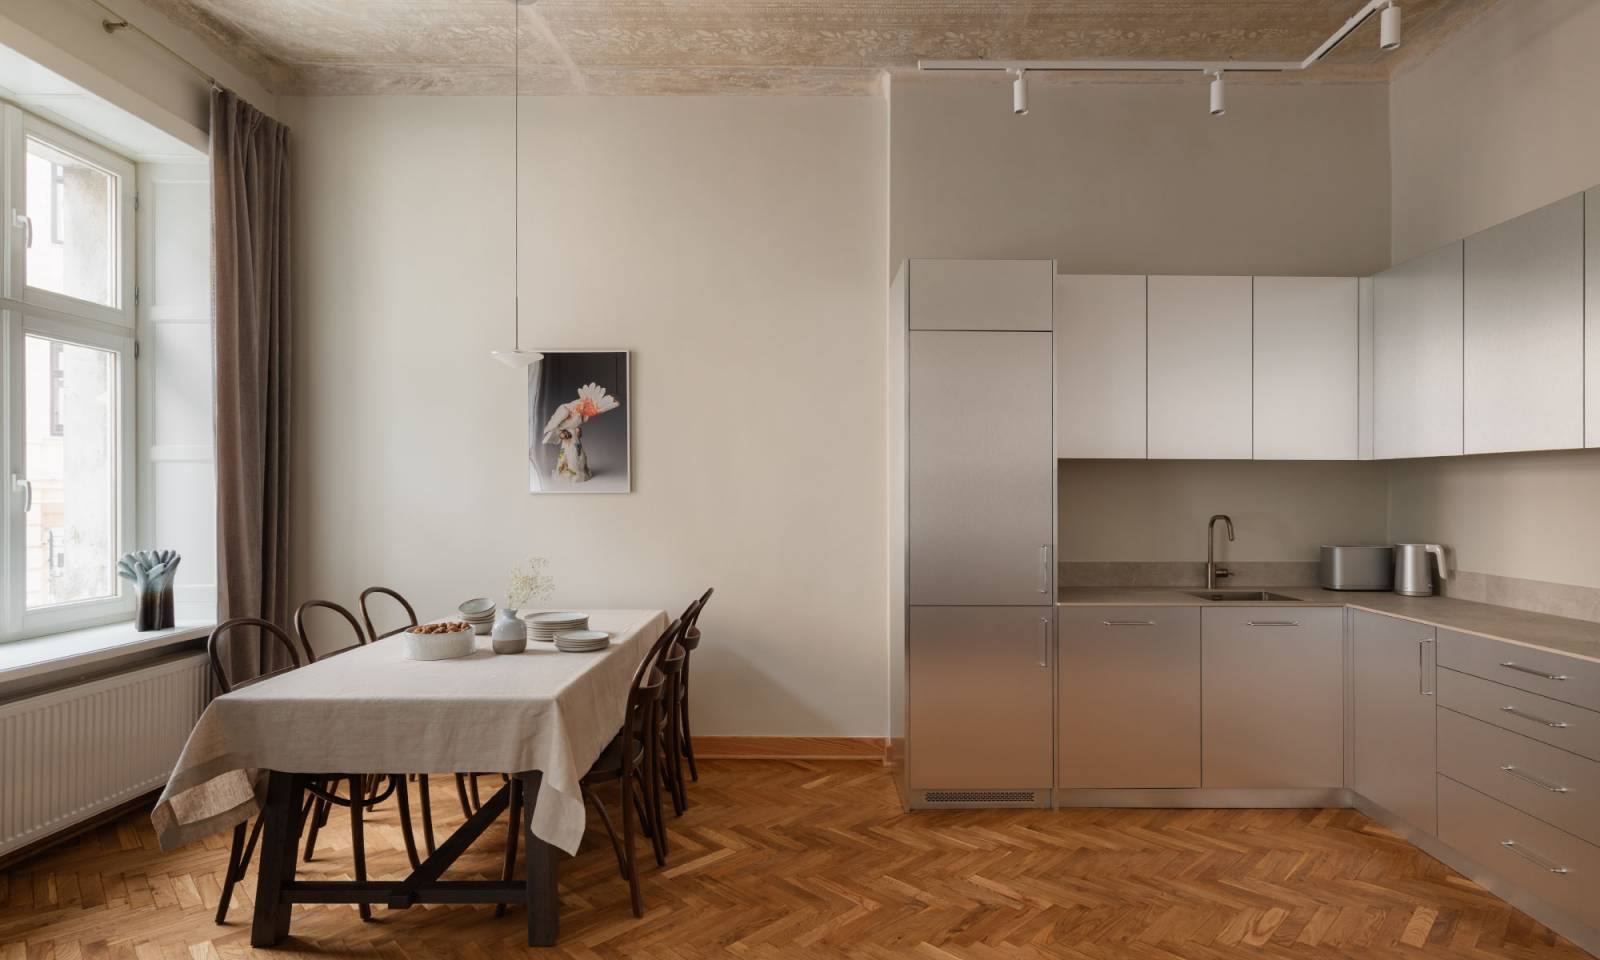 Nowoczesna i minimalistyczna kuchnia przełamuje charakter wnętrza (Fot. Patryk Polewany)